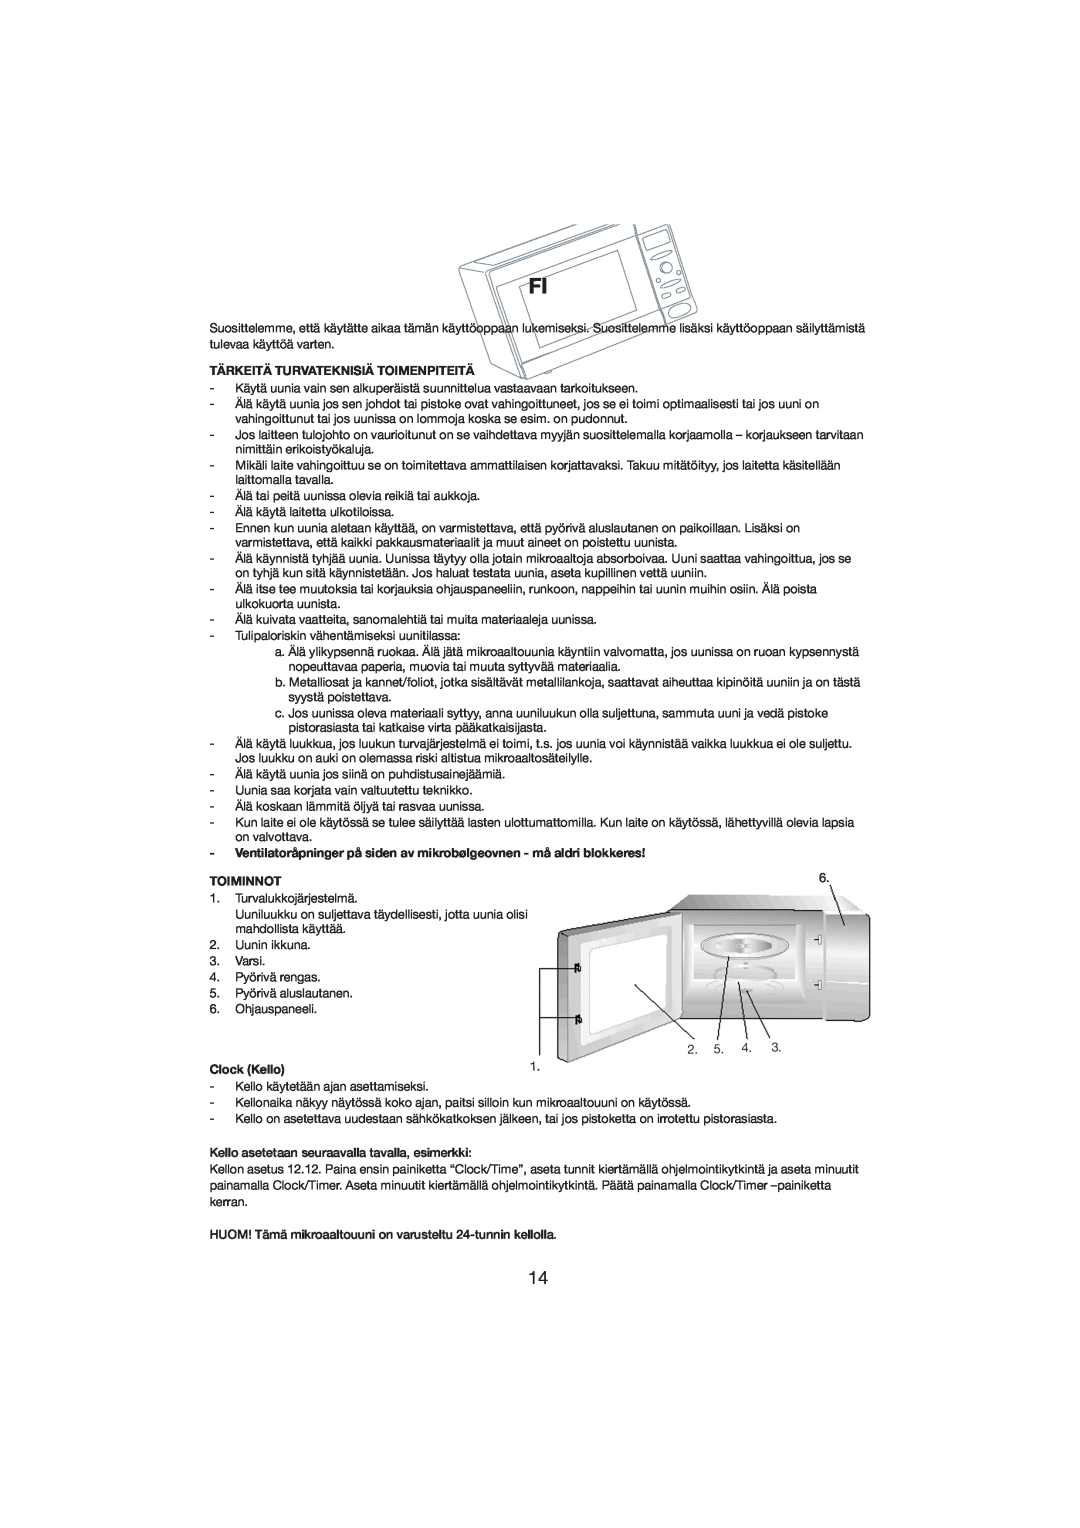 Melissa 253-001 manual Tärkeitä Turvateknisiä Toimenpiteitä, Toiminnot, Clock Kello 